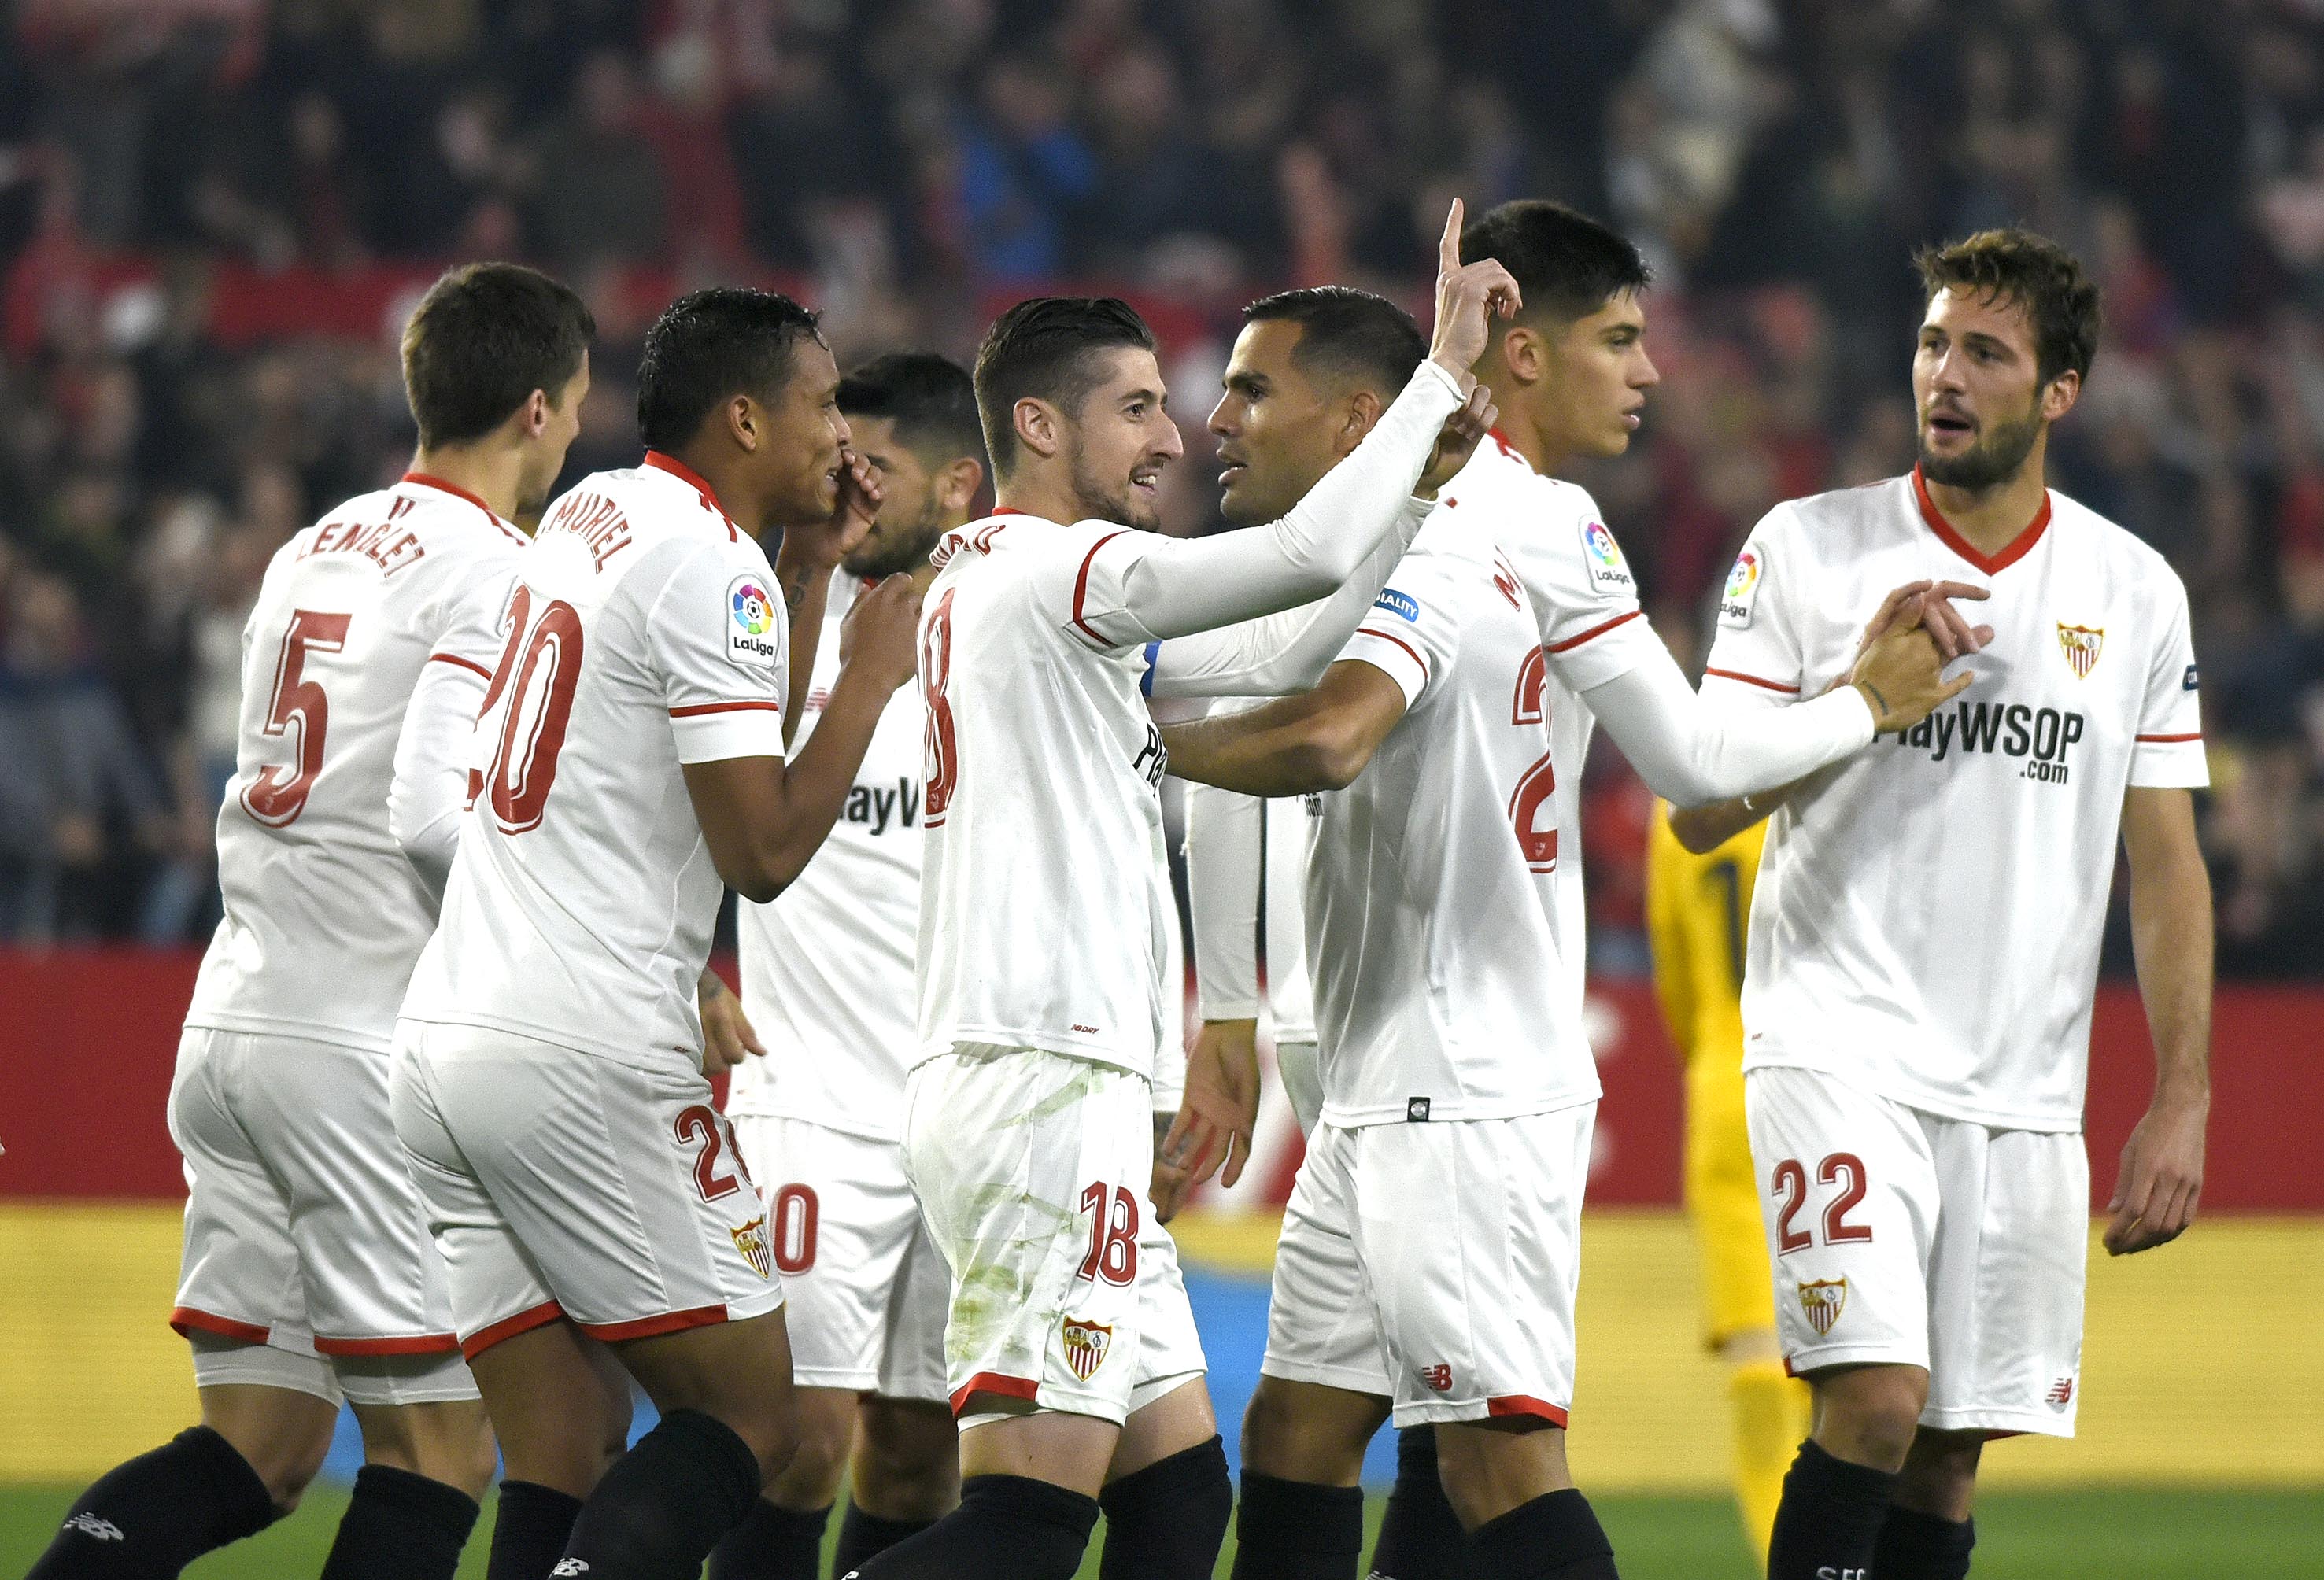 Mercado celebrates a Sevilla goal